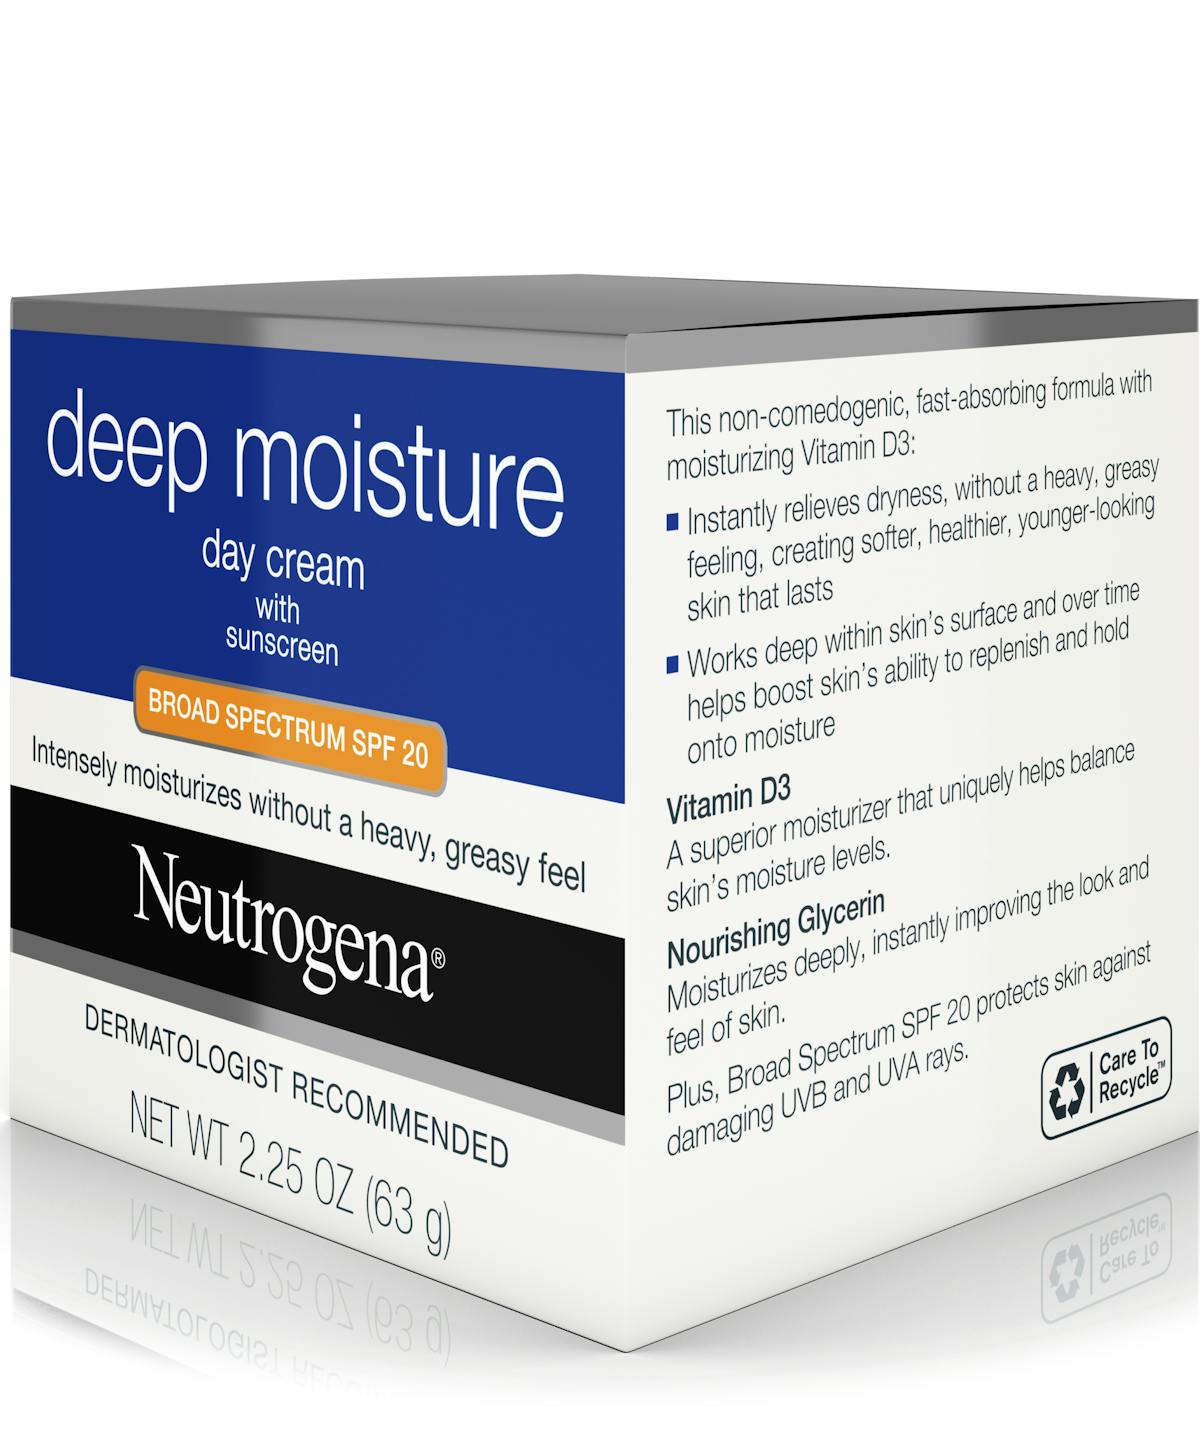 Deep moisture facial cream